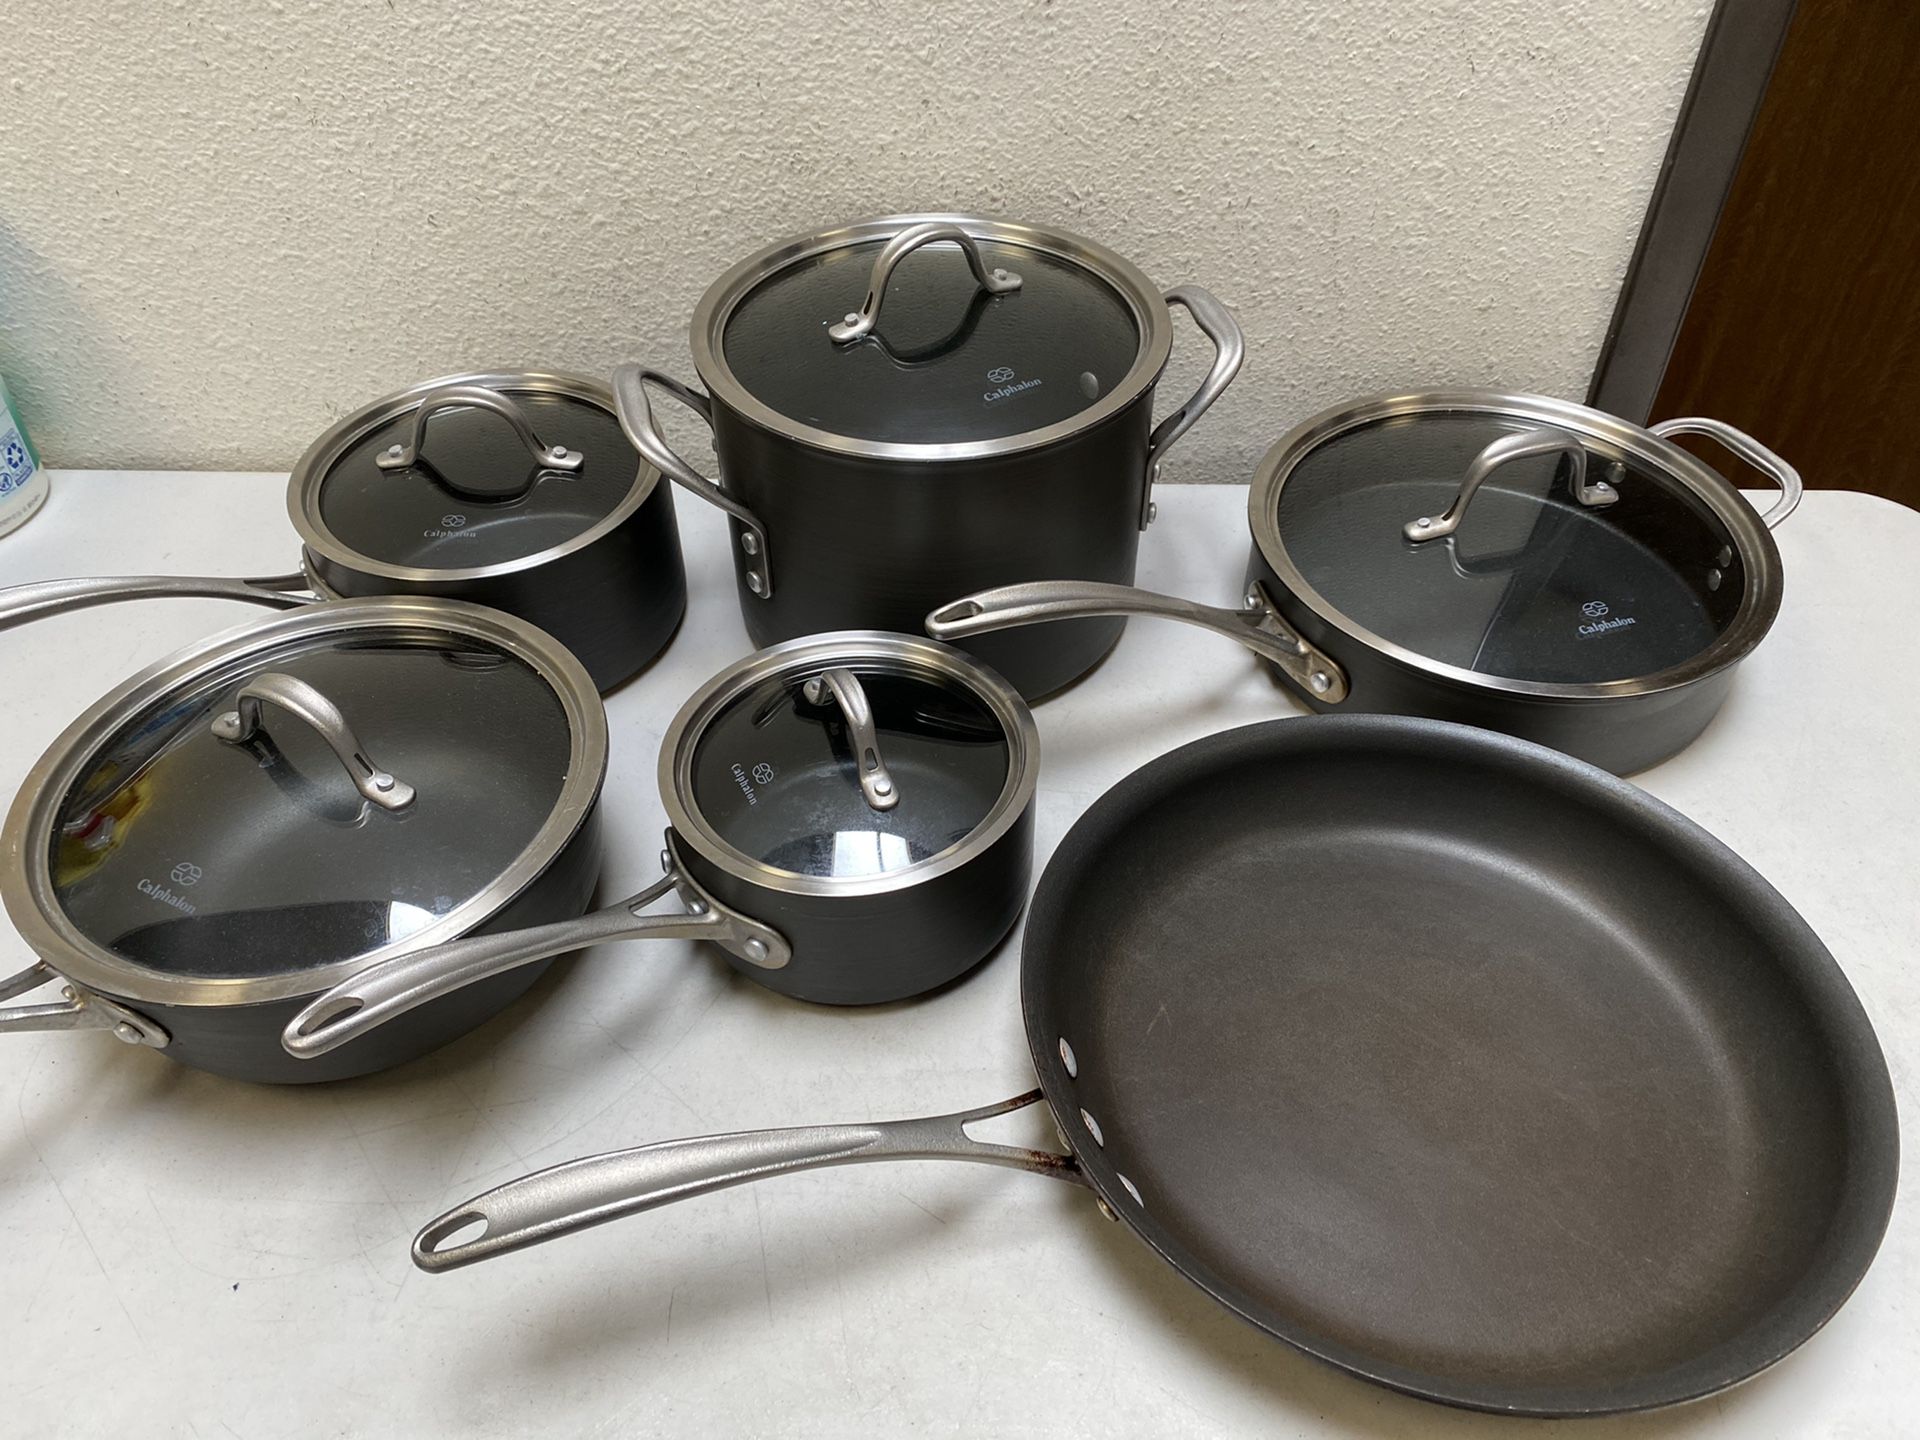 Calphalon 13-piece Commercial Cookware Set pans pots